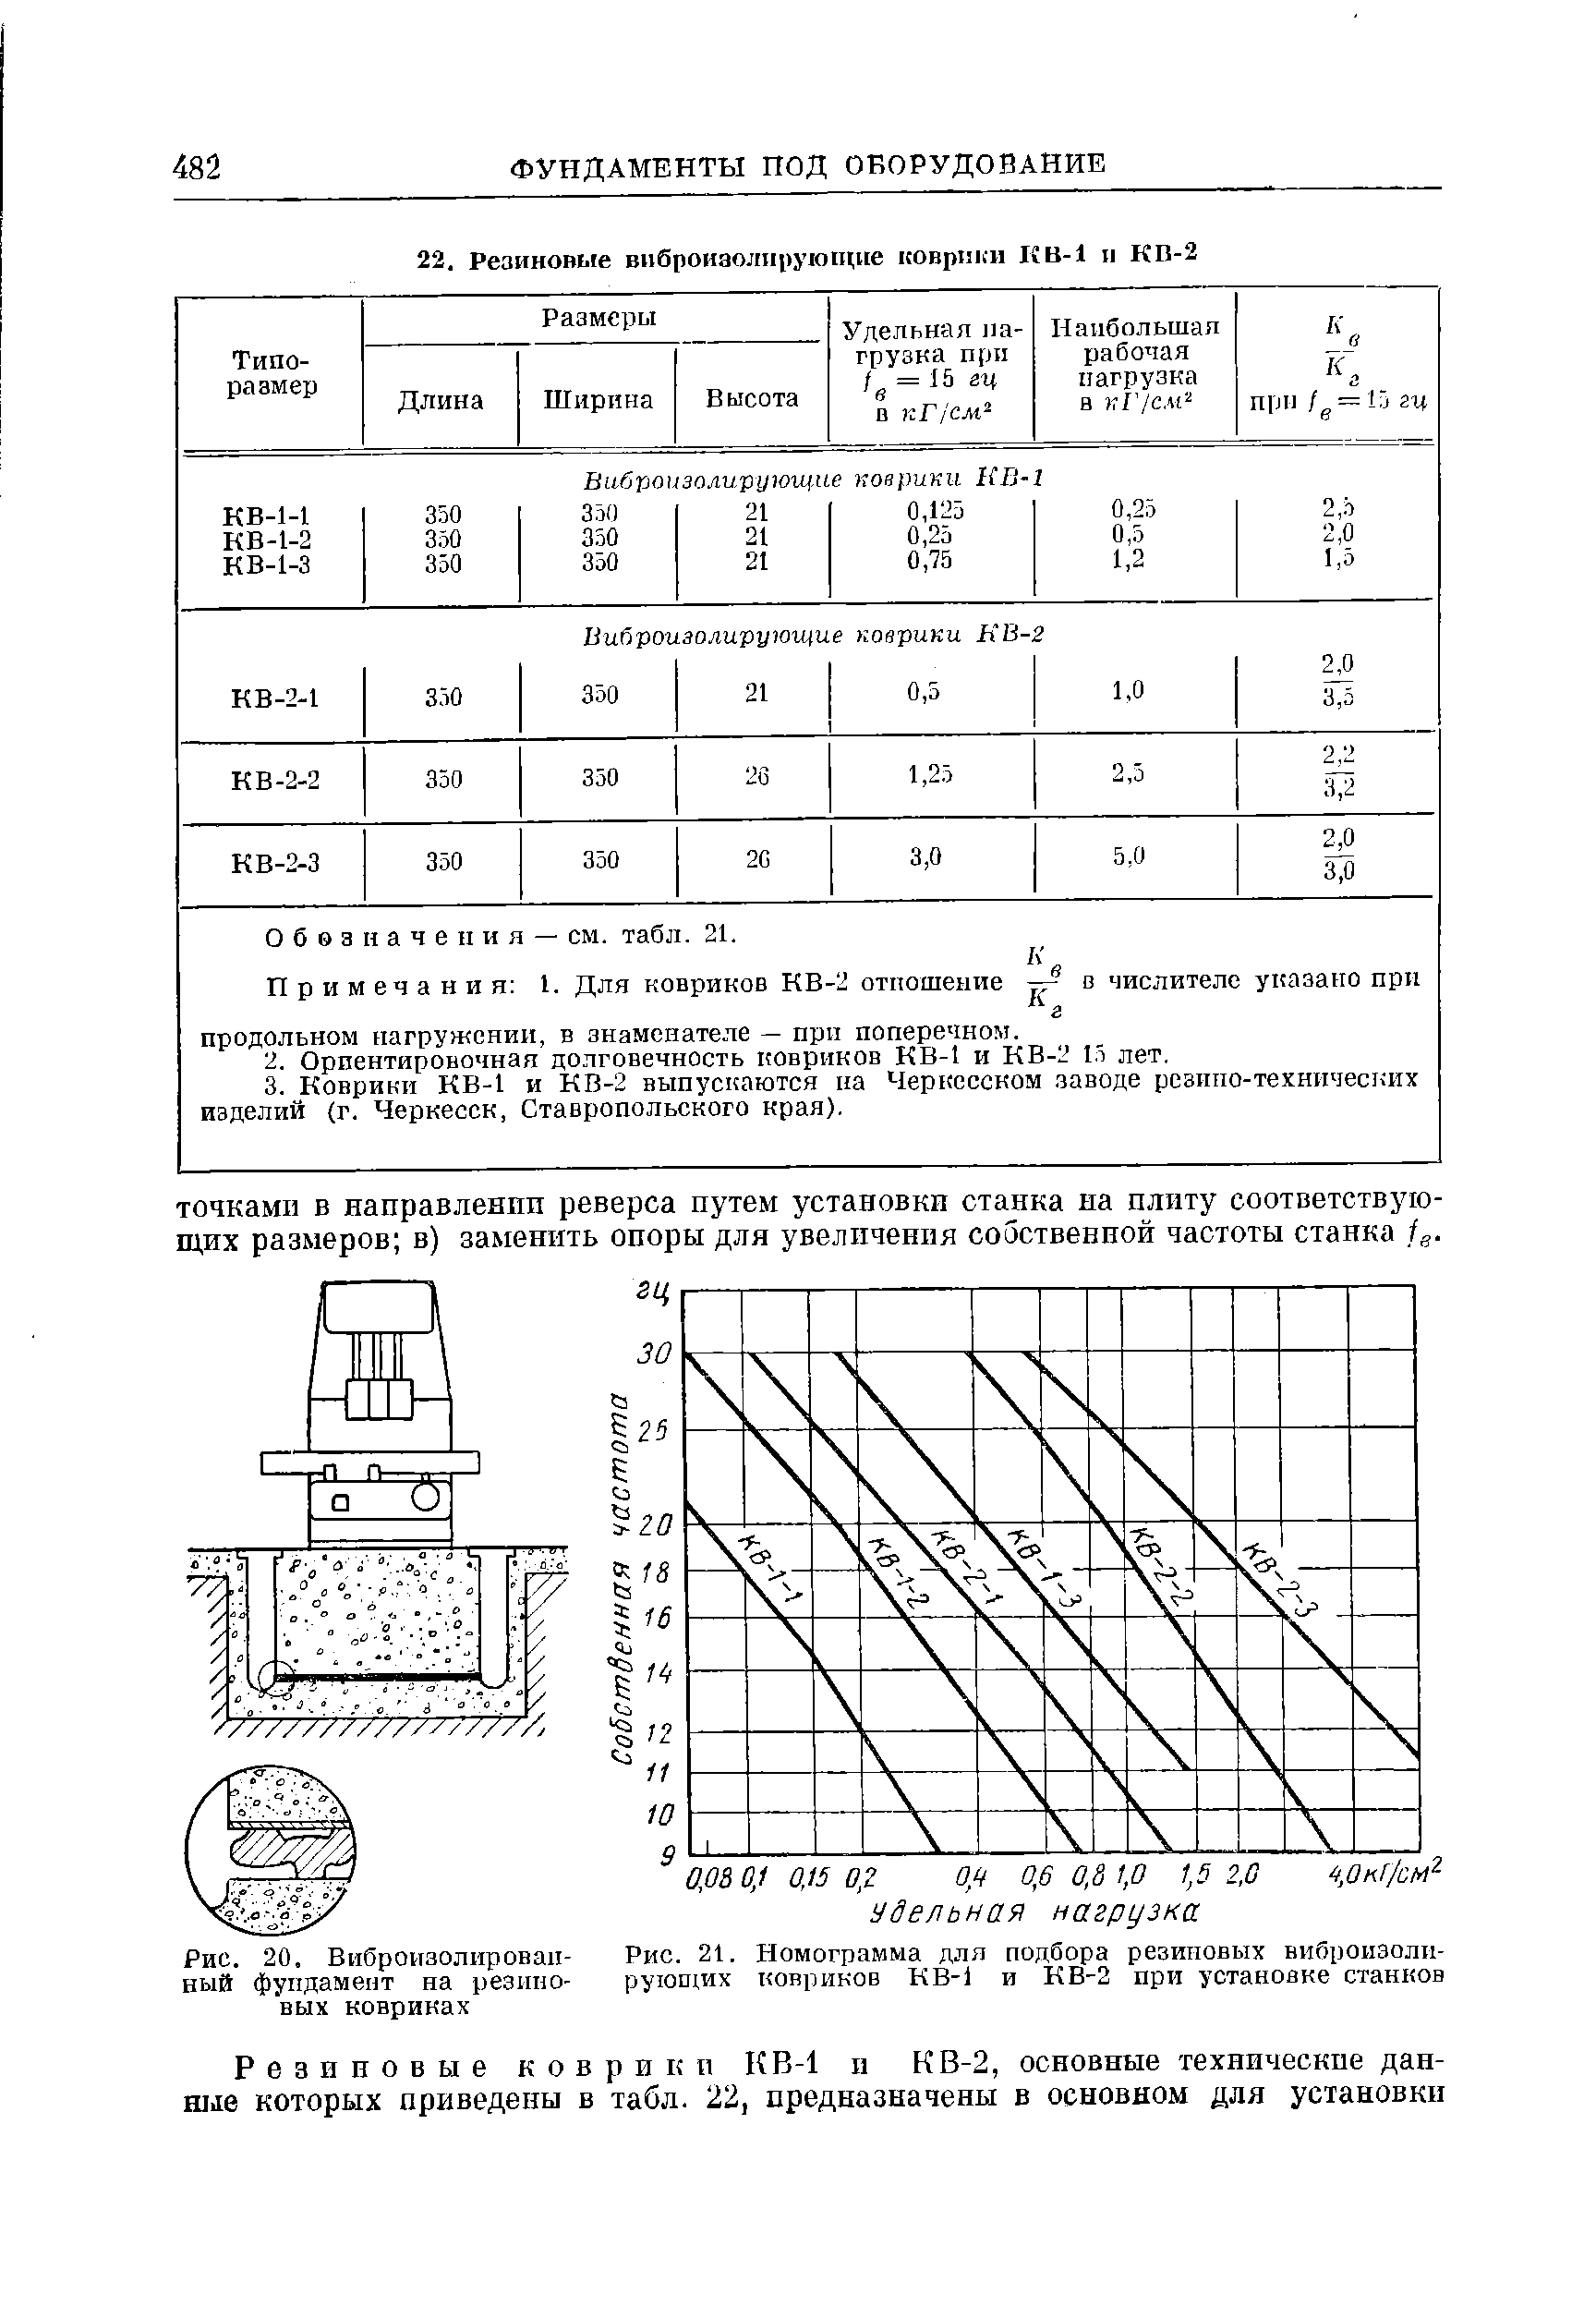 Рис. 21, Номограмма для подбора резиновых виброиэоли-рующих ковриков КВ-1 и КВ-2 при установке станков
